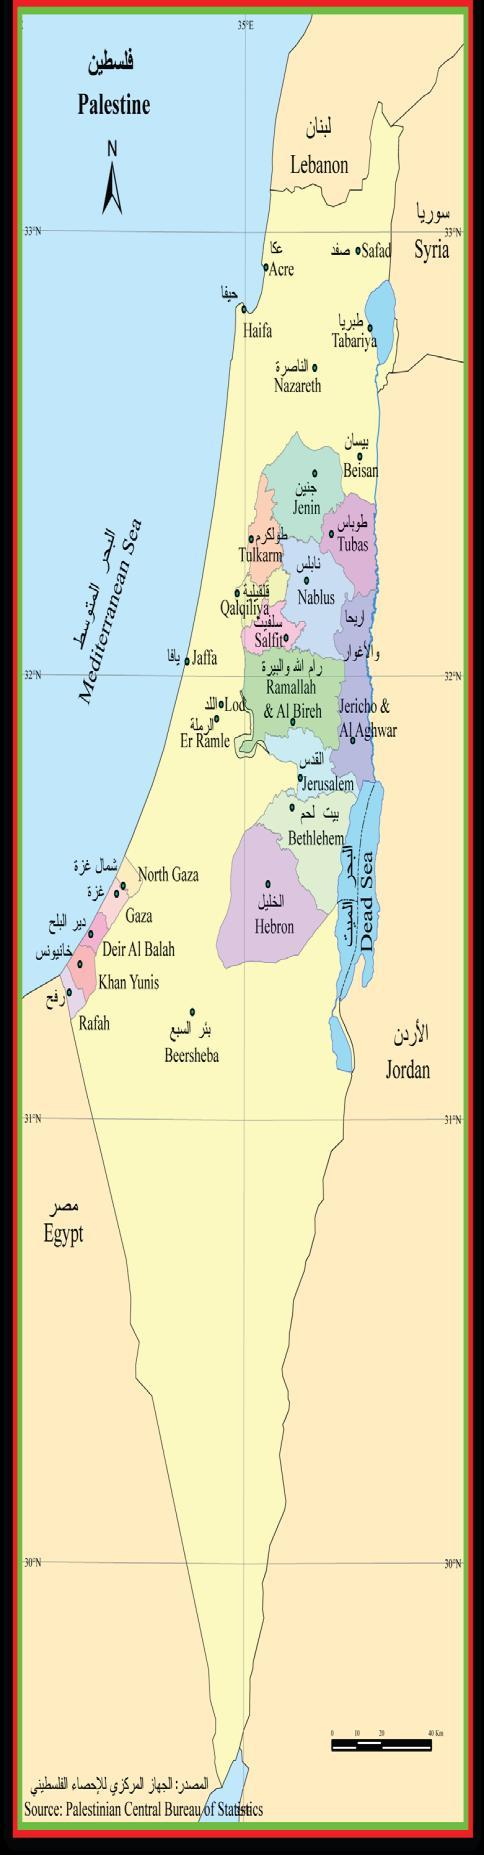 ΚΕΦΑΛΑΙΟ 1: ΠΑΛΑΙΣΤΙΝΗ 13 Χάρτης 1. Παλαιστινιακή εδάφη Πηγή: Palestinian Central Bureau of Statistics, 20